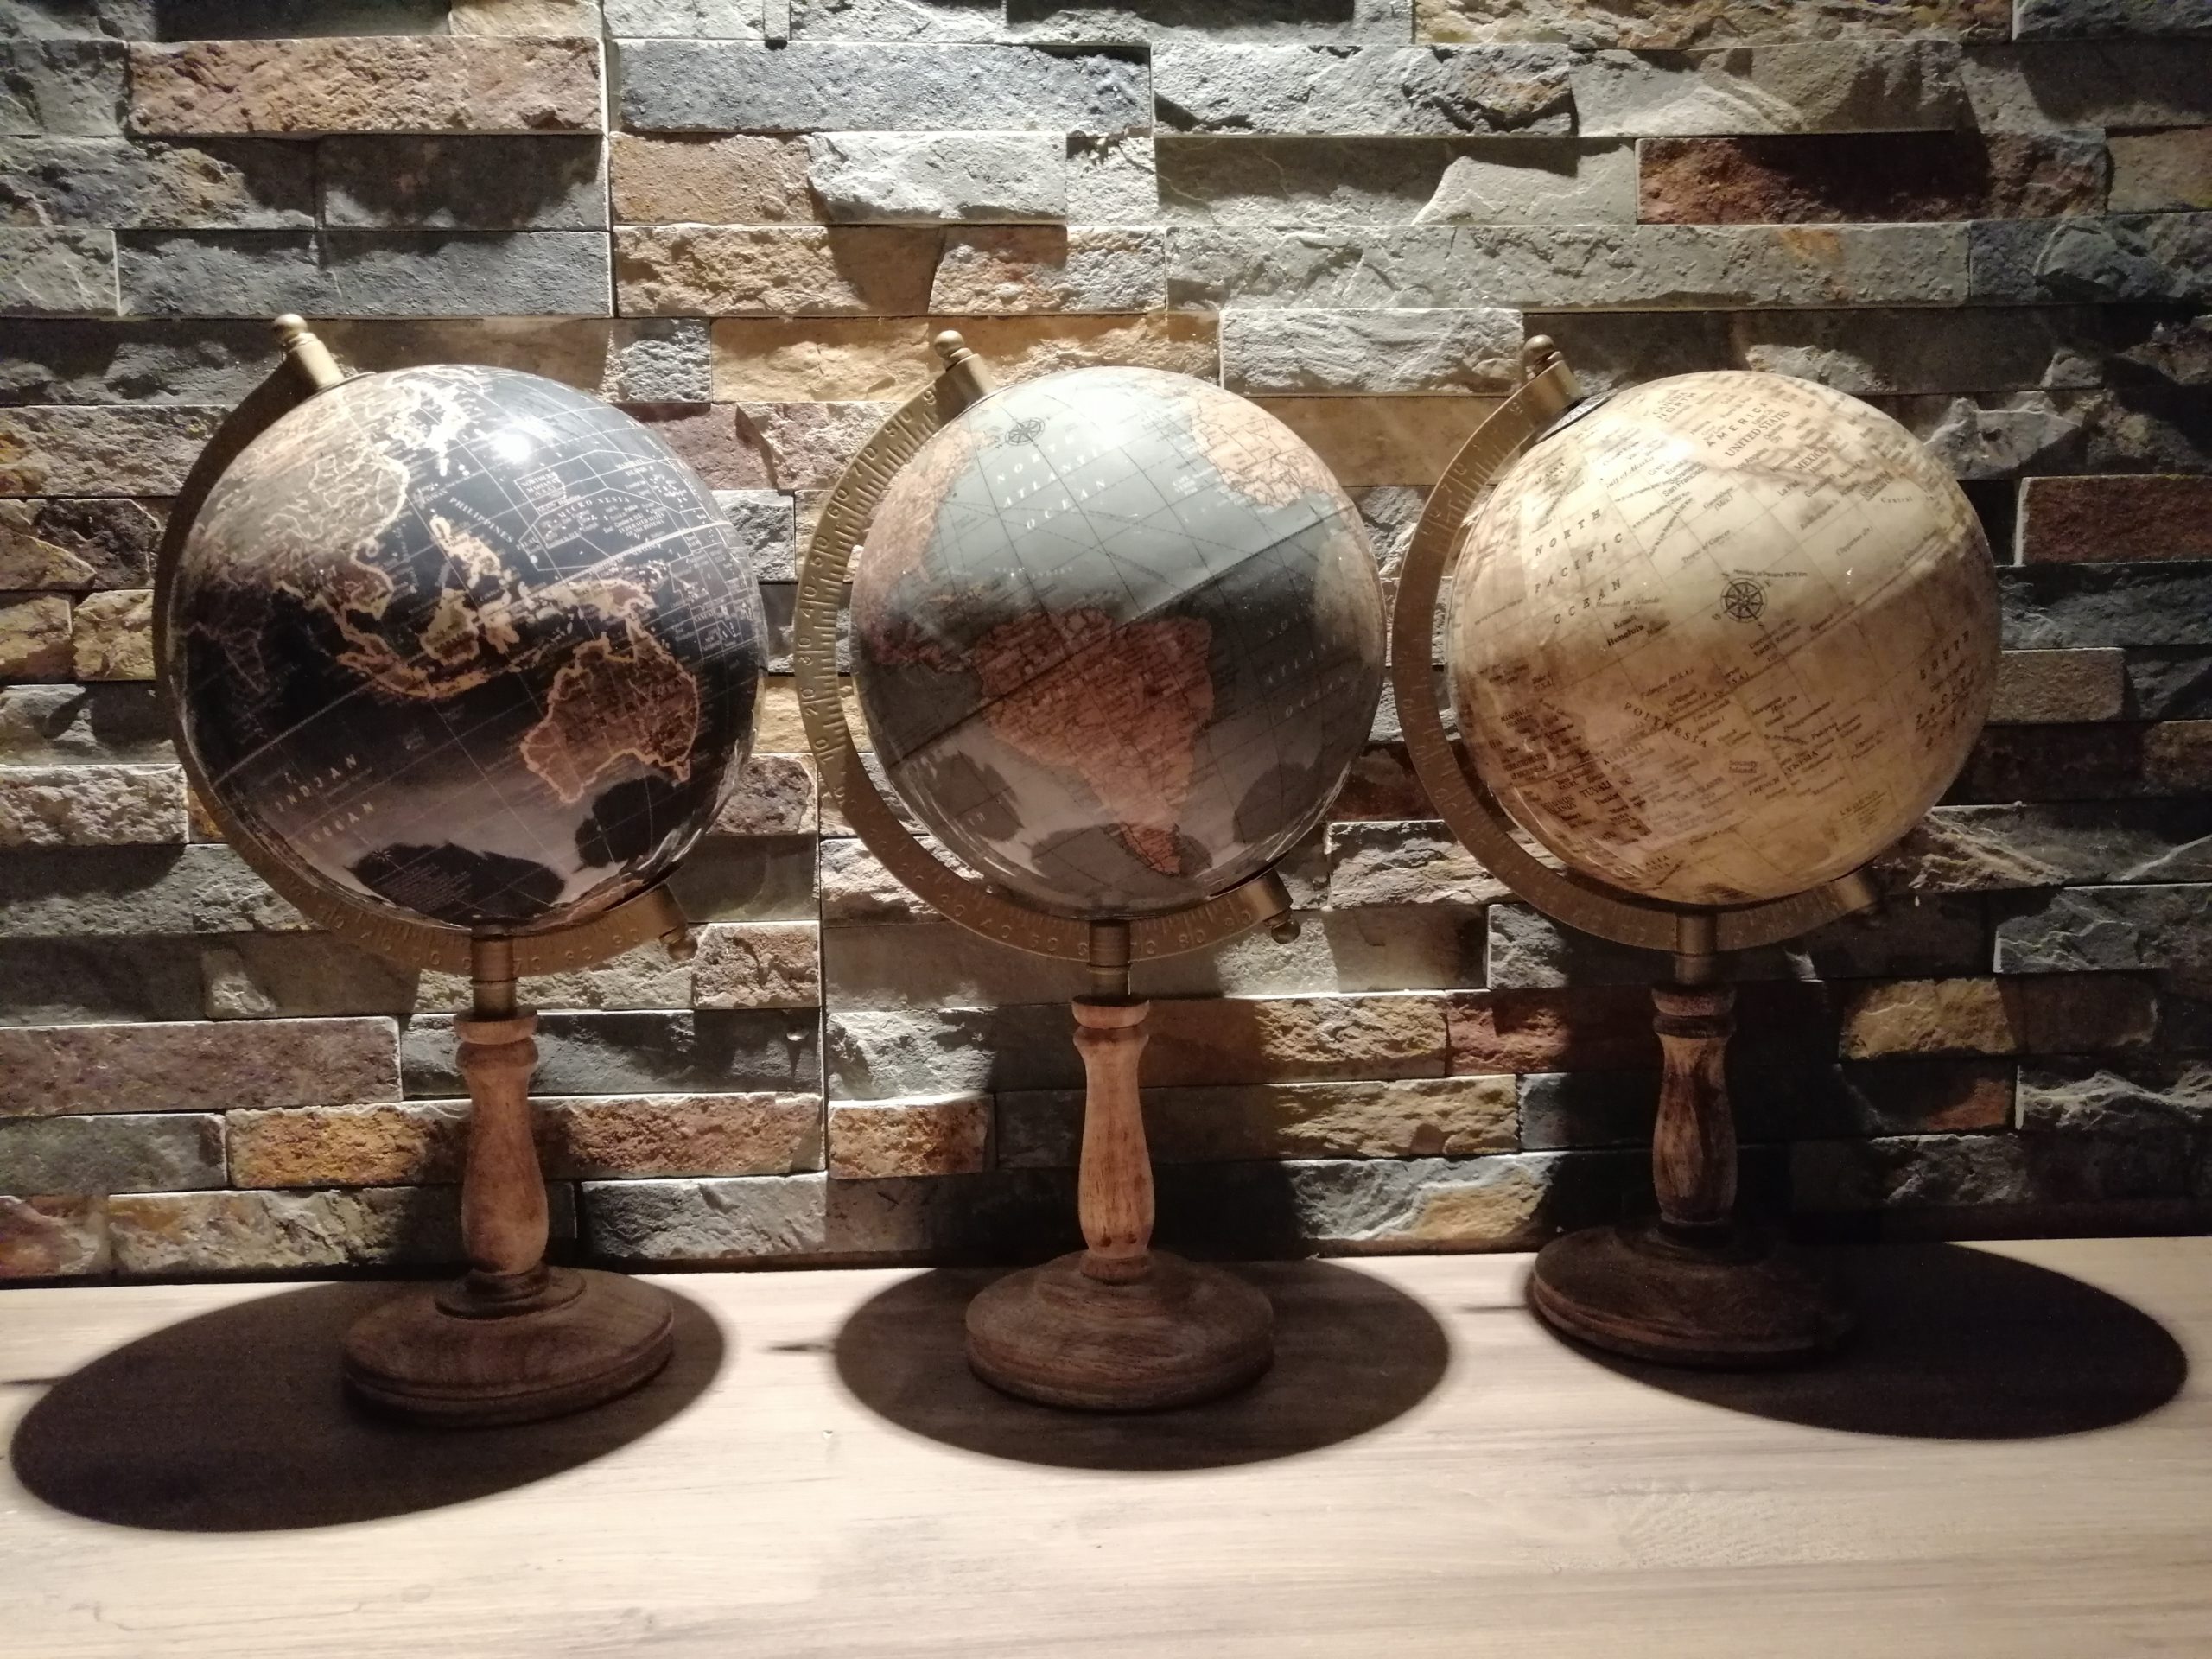 Globe terrestre vintage -Location décorations événements